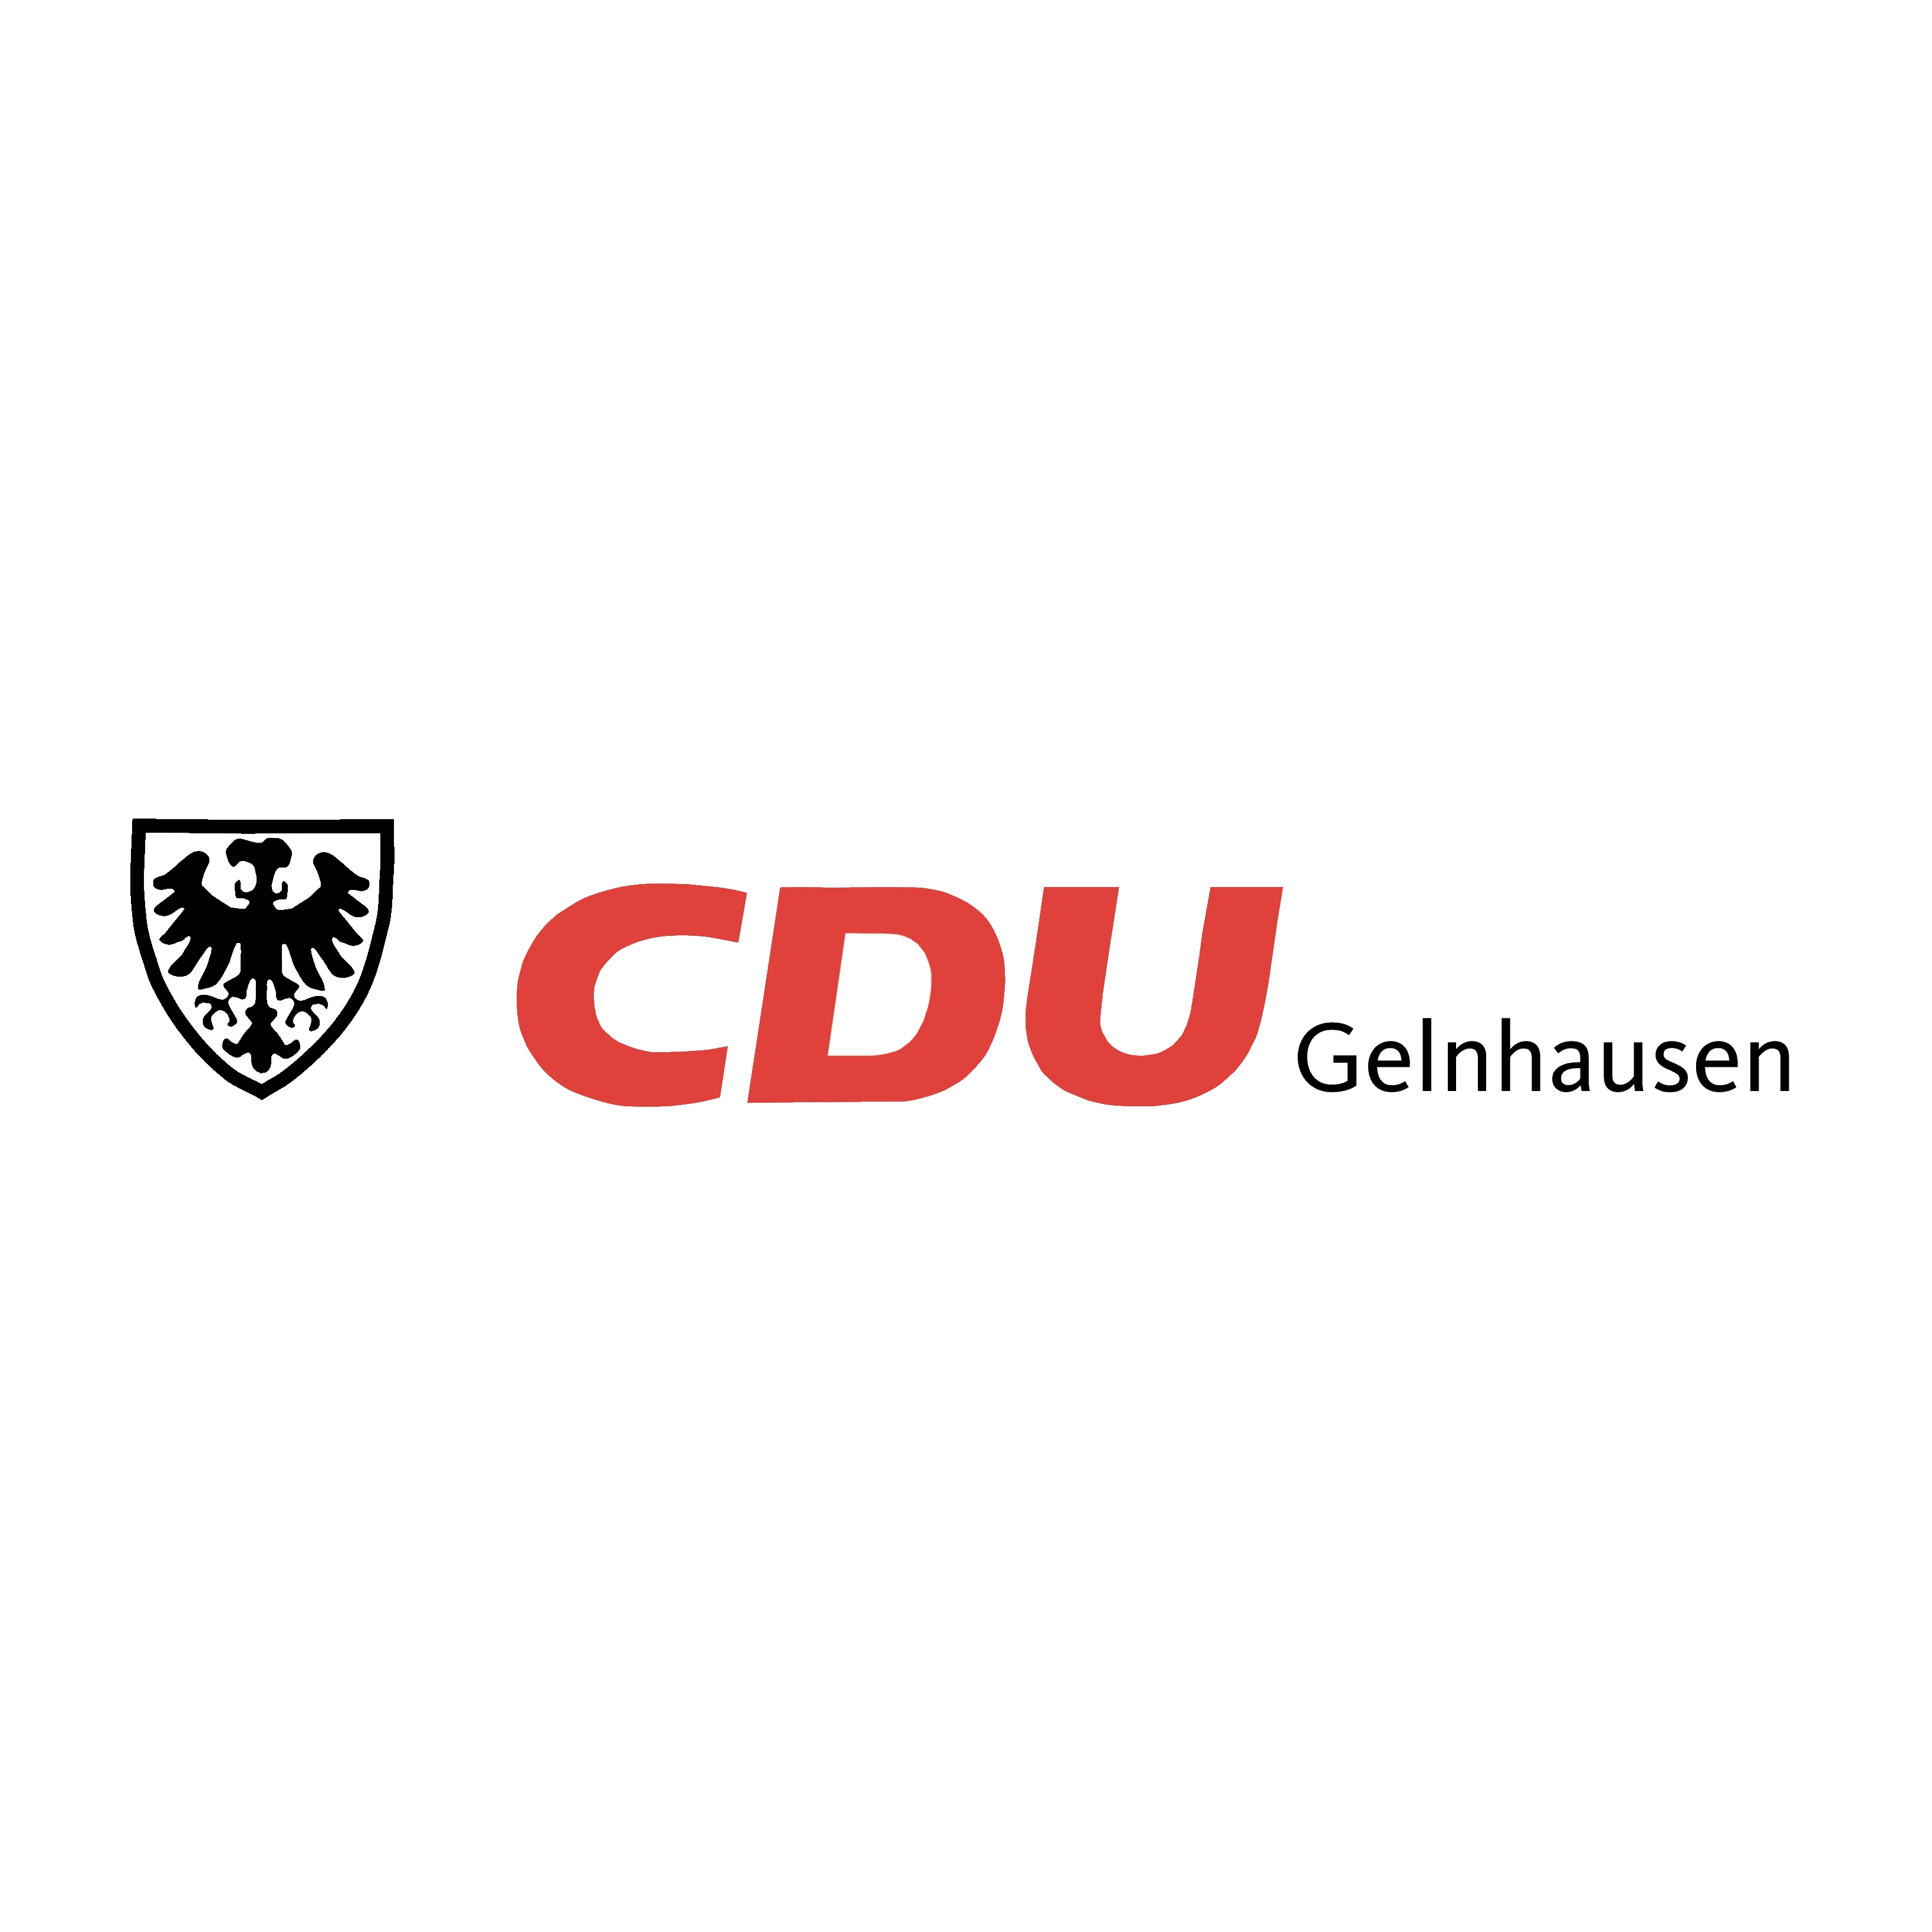 CDU Gelnhausen 2. Vorsitzender